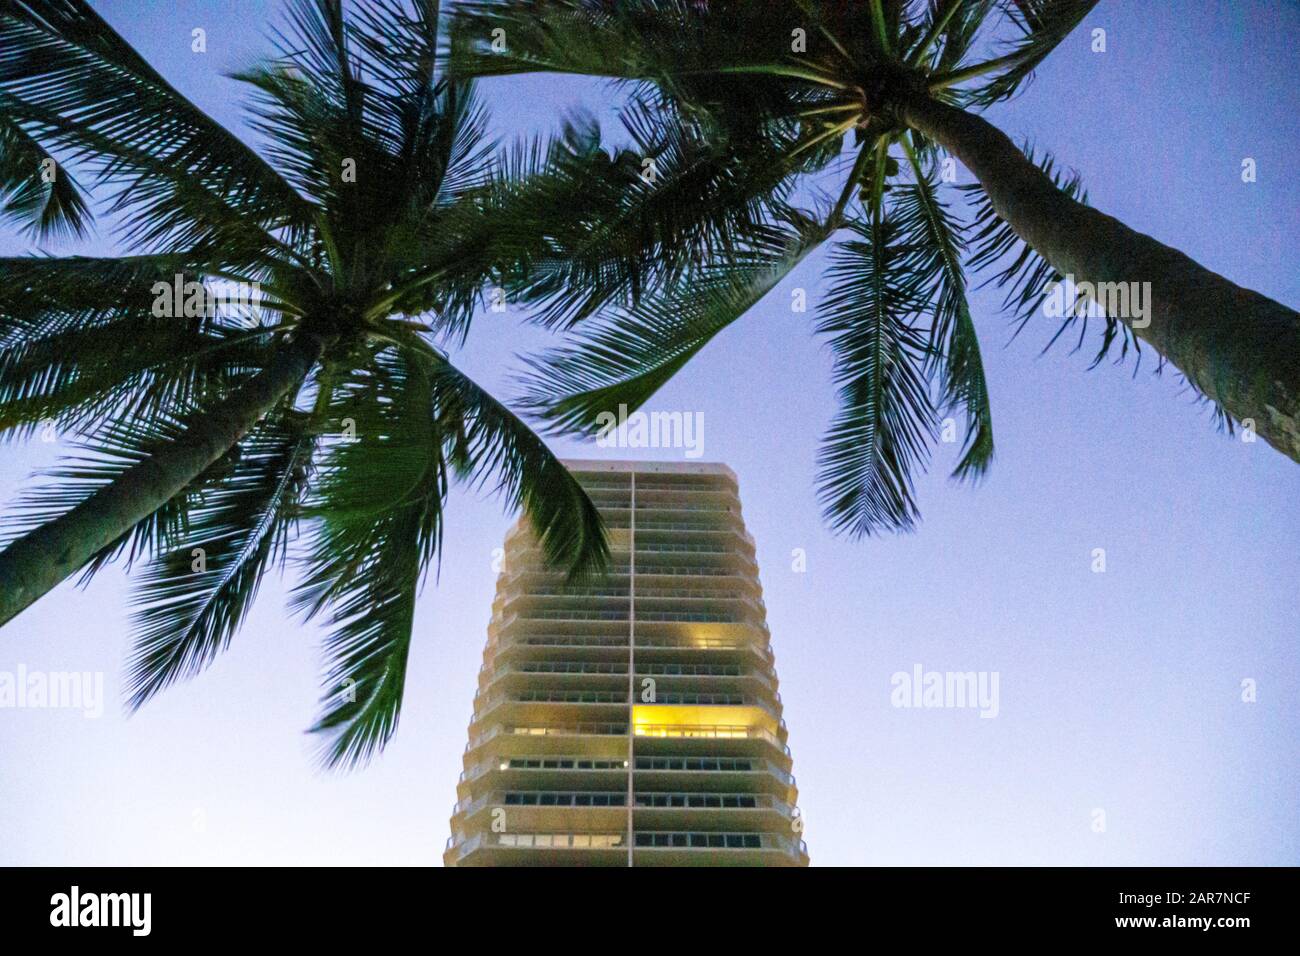 Miami Beach Florida, North Beach, Hochhaus Wolkenkratzer Gebäude Eigentumswohnungen Eigentumswohnungen Eigentumswohnungen Wohnsitze auseinander Stockfoto